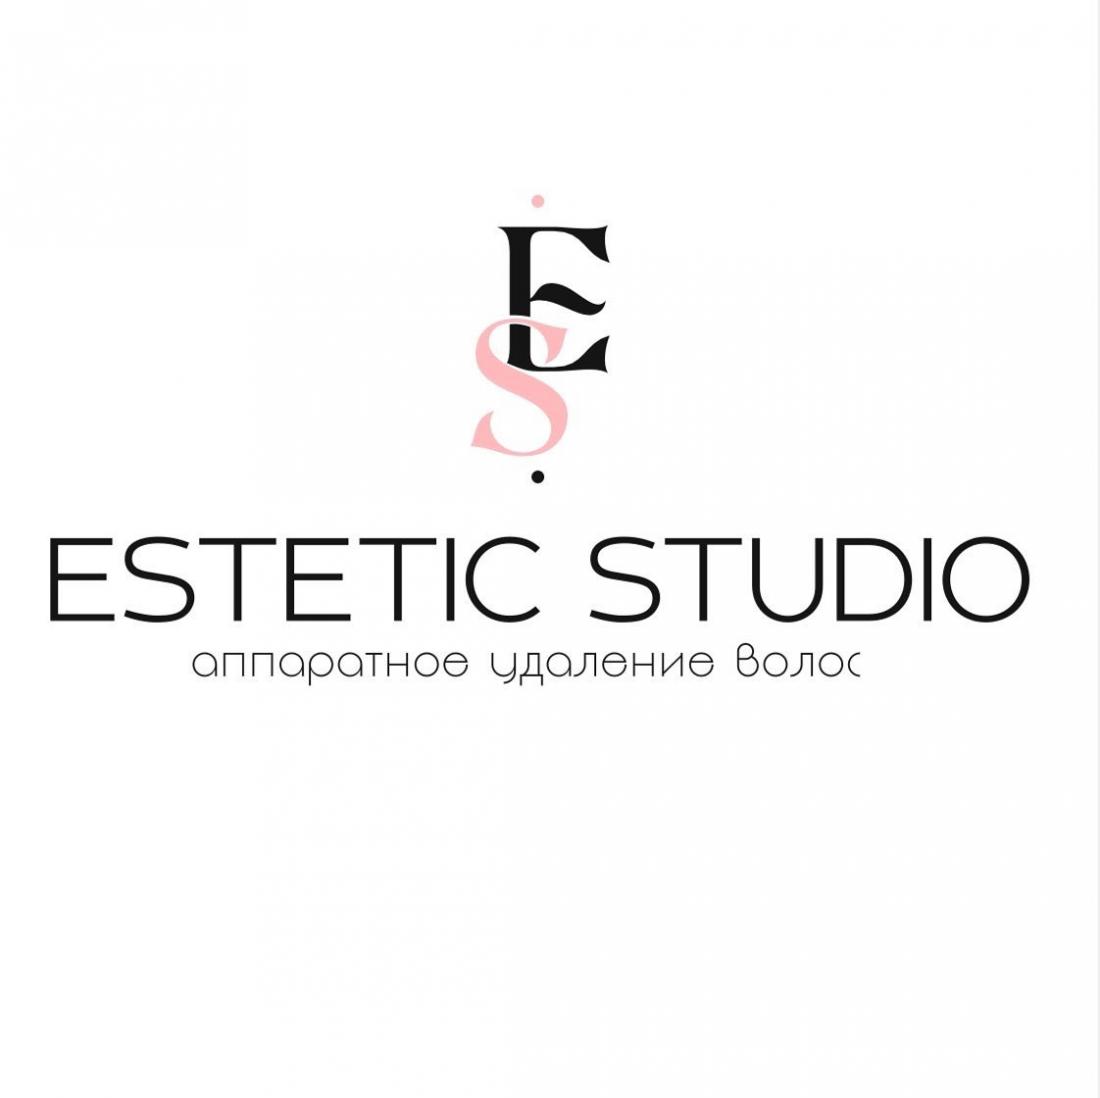 Комплексы на аппаратное удаление волос от 35 р. в студии "Estetic studio" в Слониме